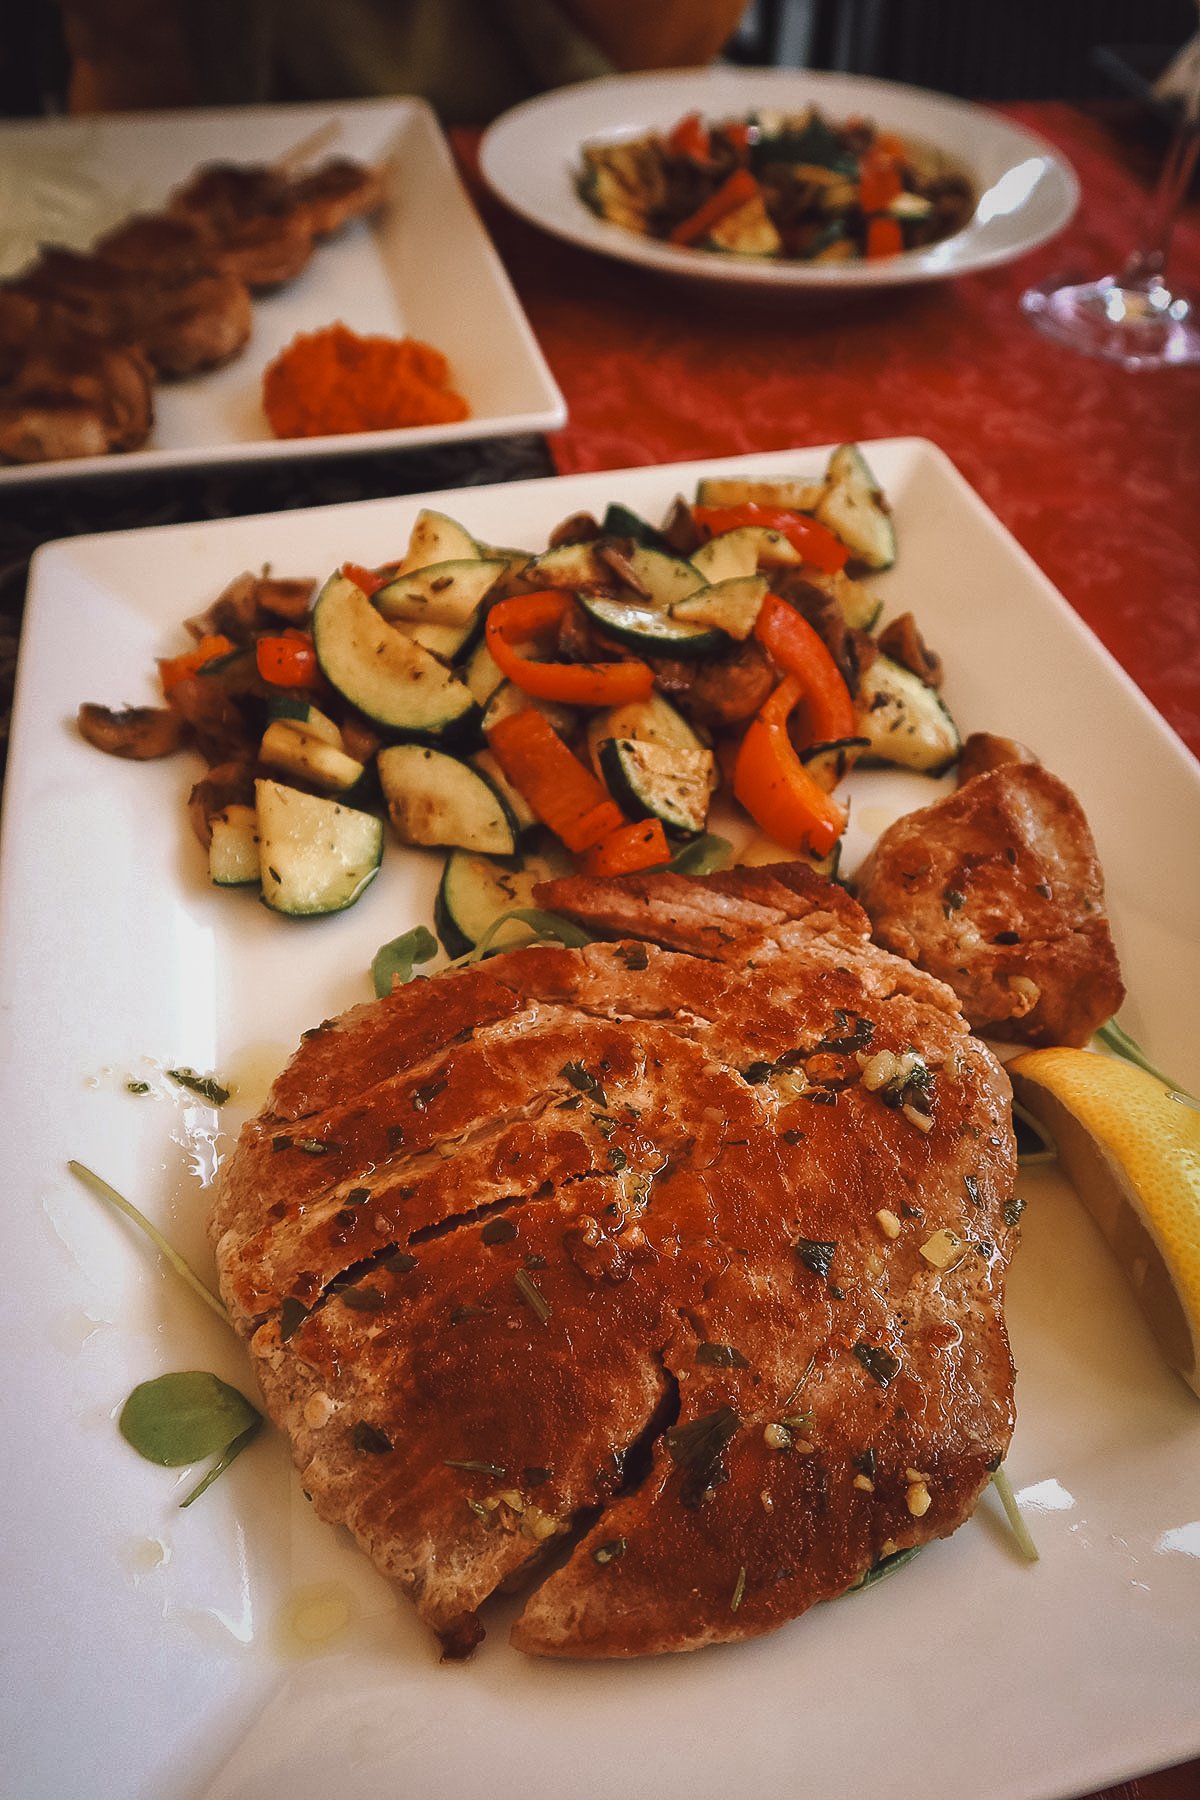 Tuna steak at a restaurant in Pula